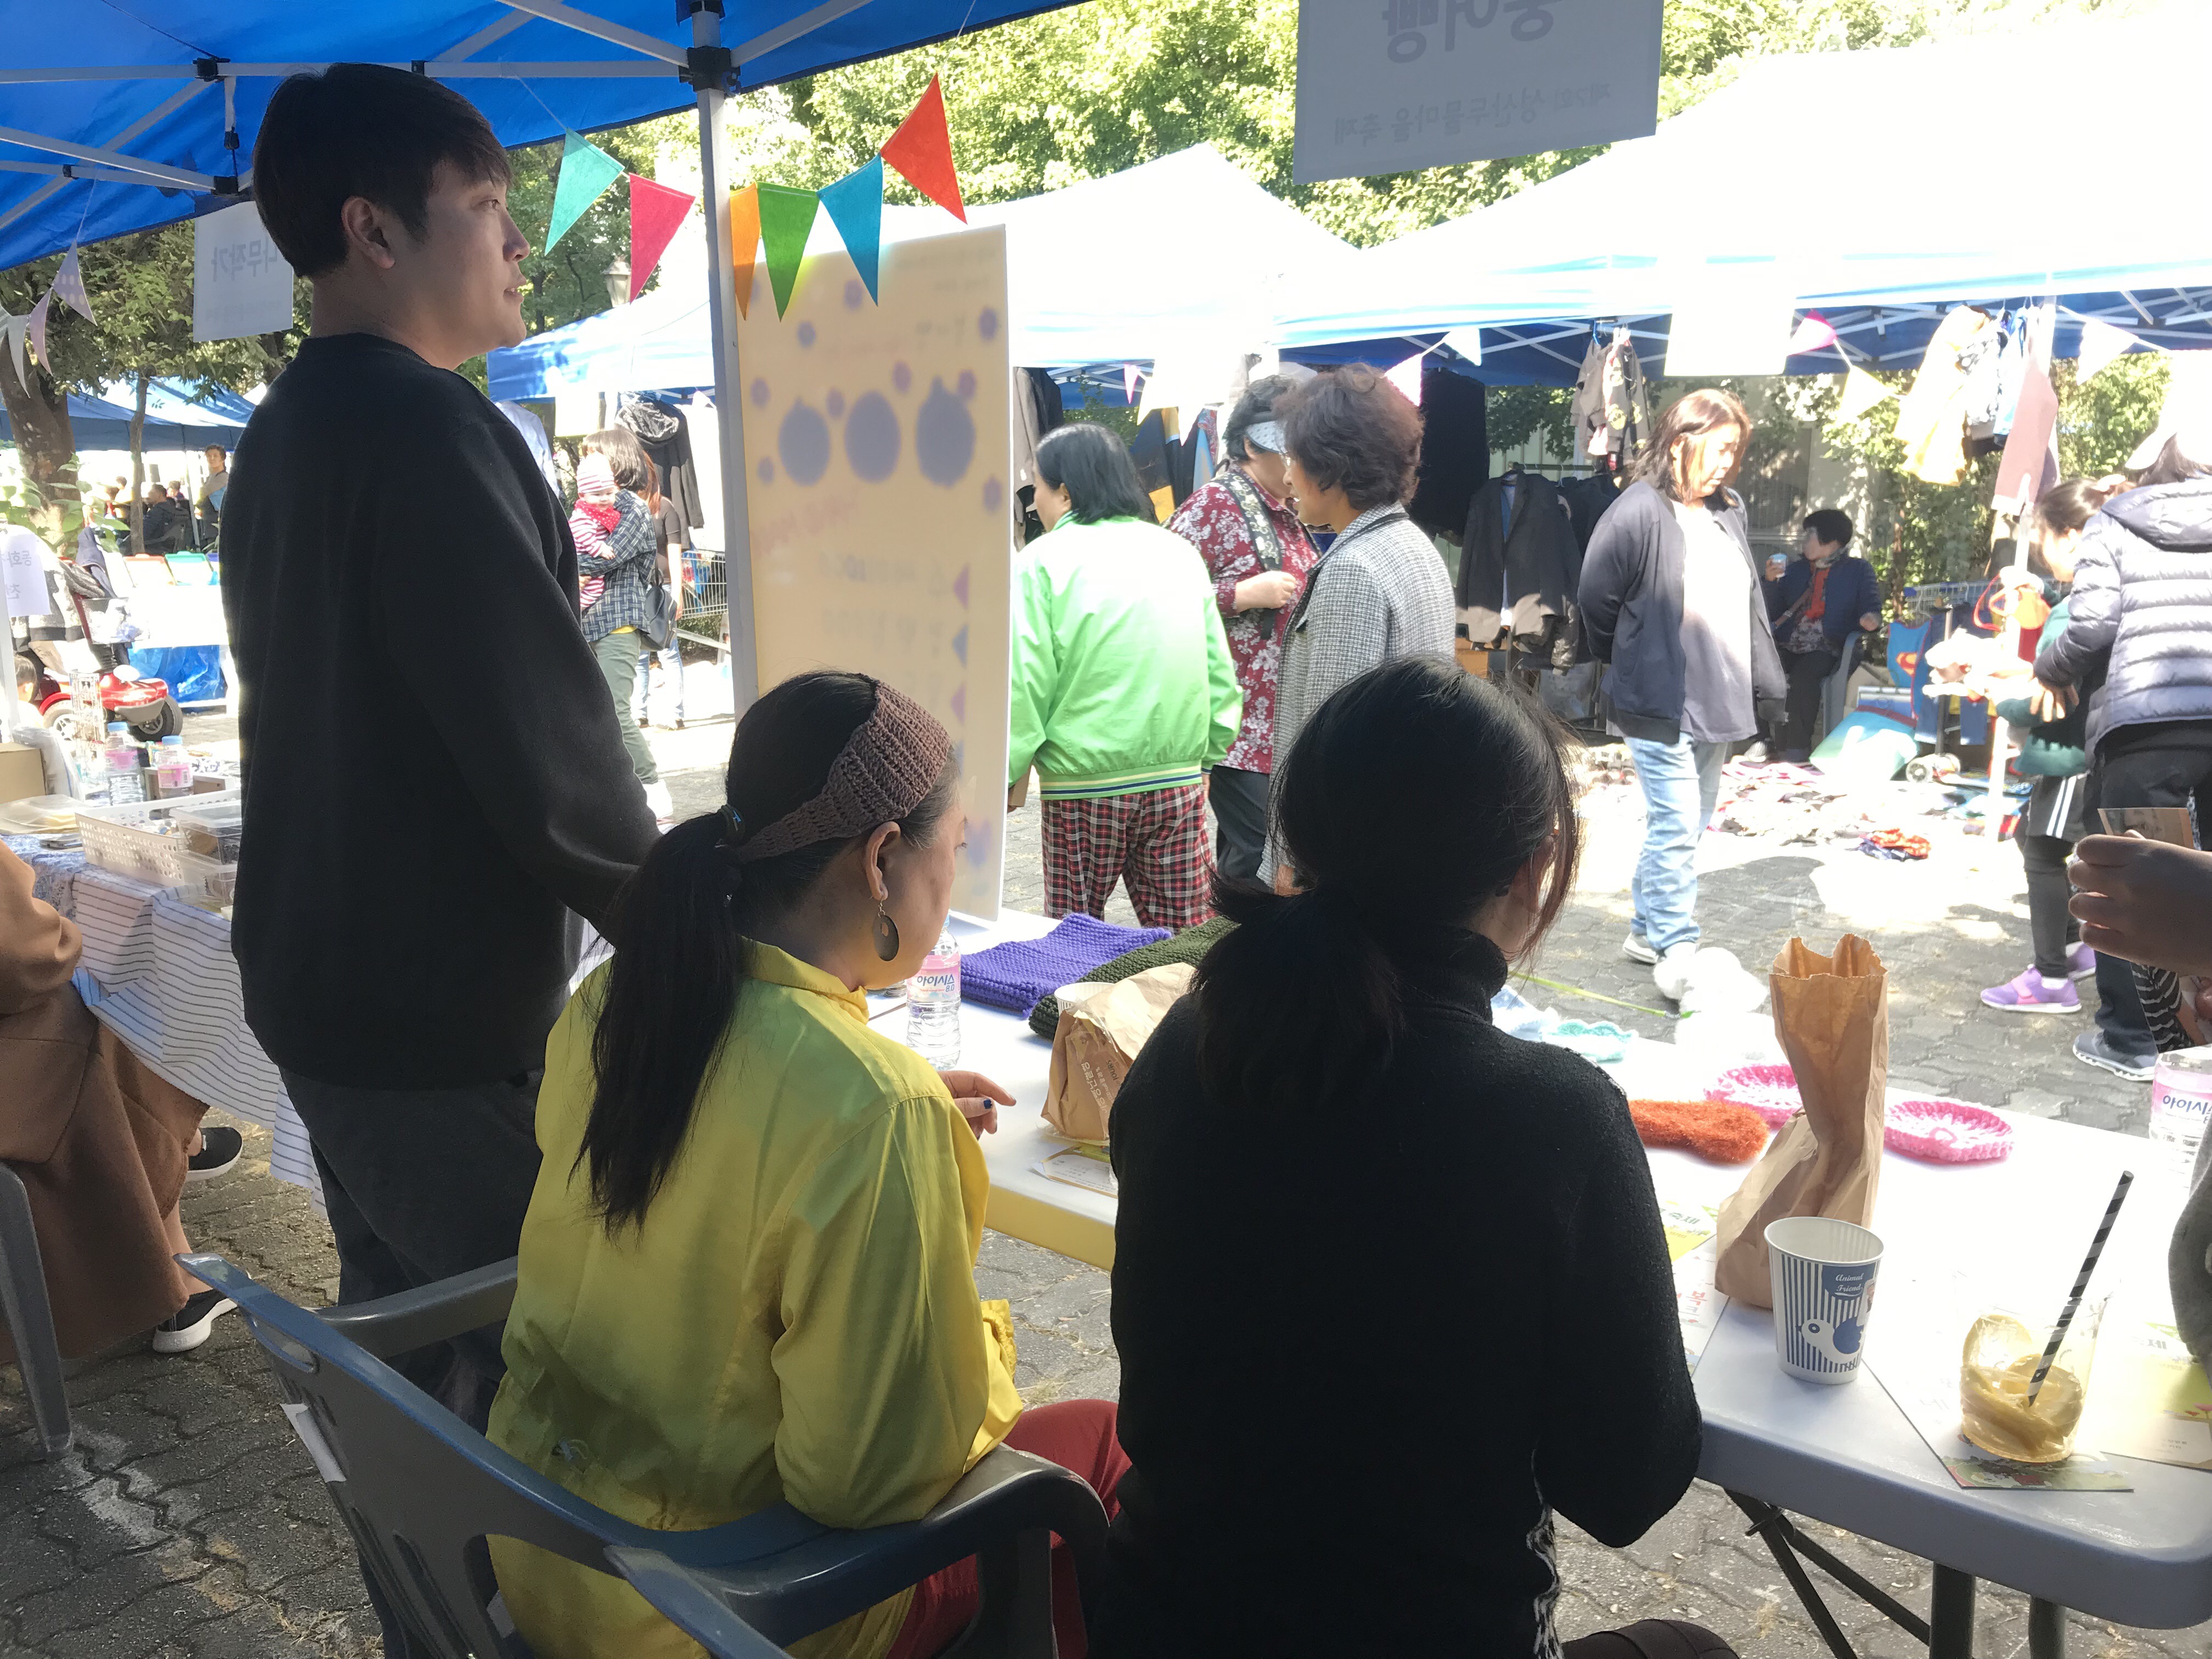 지난 19일 서울 마포구 성산종합복지관 주변에서 열린 ‘제7회 성산두물마을 축제’에 참가한 ‘붕어빵’ 회원들의 모습. 붕어빵 제공 